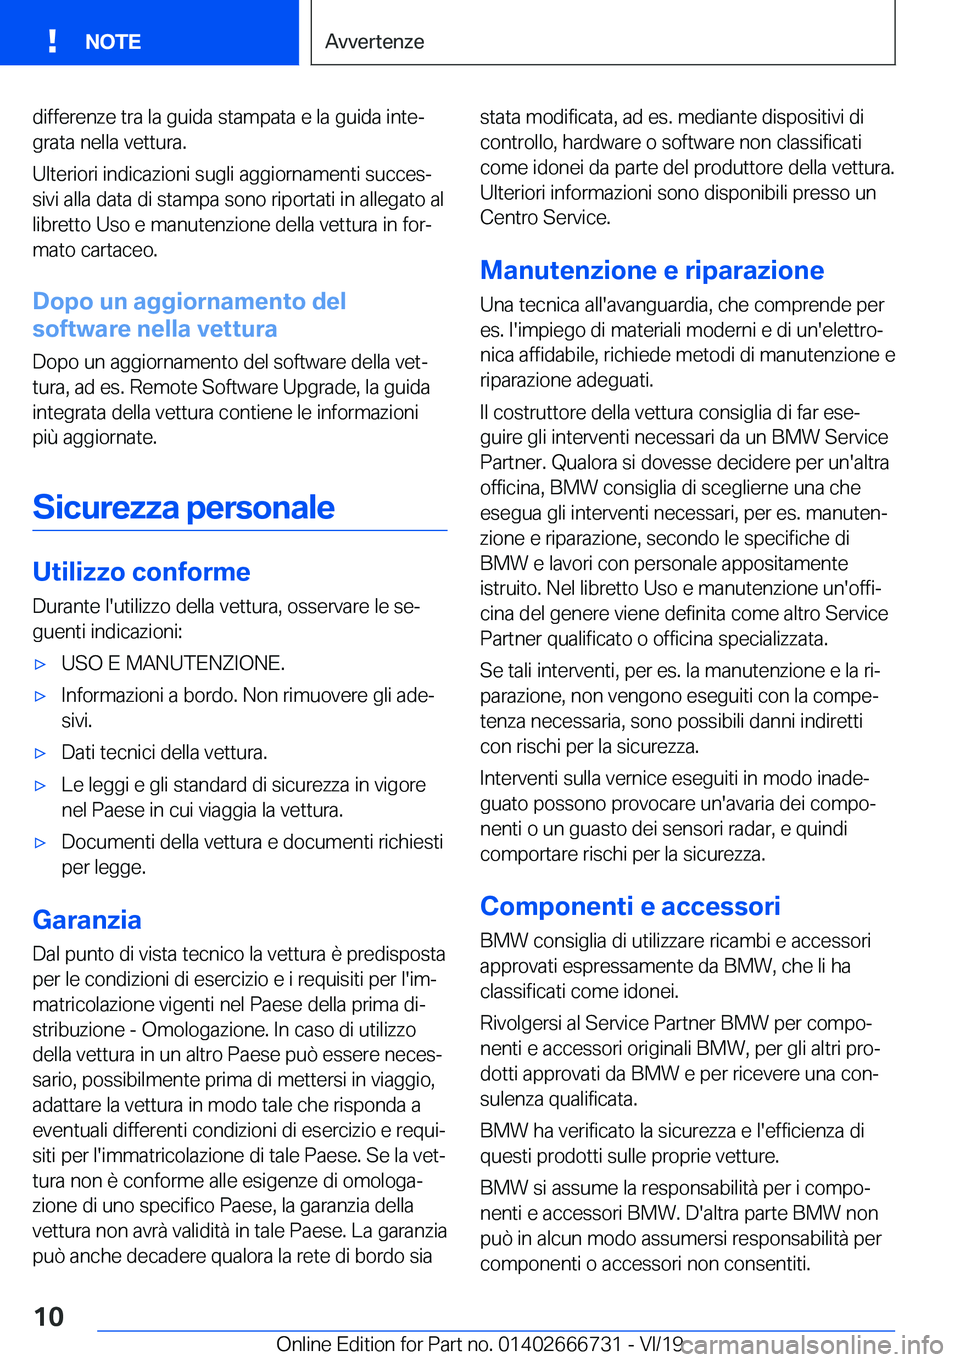 BMW M5 2020  Libretti Di Uso E manutenzione (in Italian) �d�i�f�f�e�r�e�n�z�e��t�r�a��l�a��g�u�i�d�a��s�t�a�m�p�a�t�a��e��l�a��g�u�i�d�a��i�n�t�eª�g�r�a�t�a��n�e�l�l�a��v�e�t�t�u�r�a�.
�U�l�t�e�r�i�o�r�i��i�n�d�i�c�a�z�i�o�n�i��s�u�g�l�i��a�g